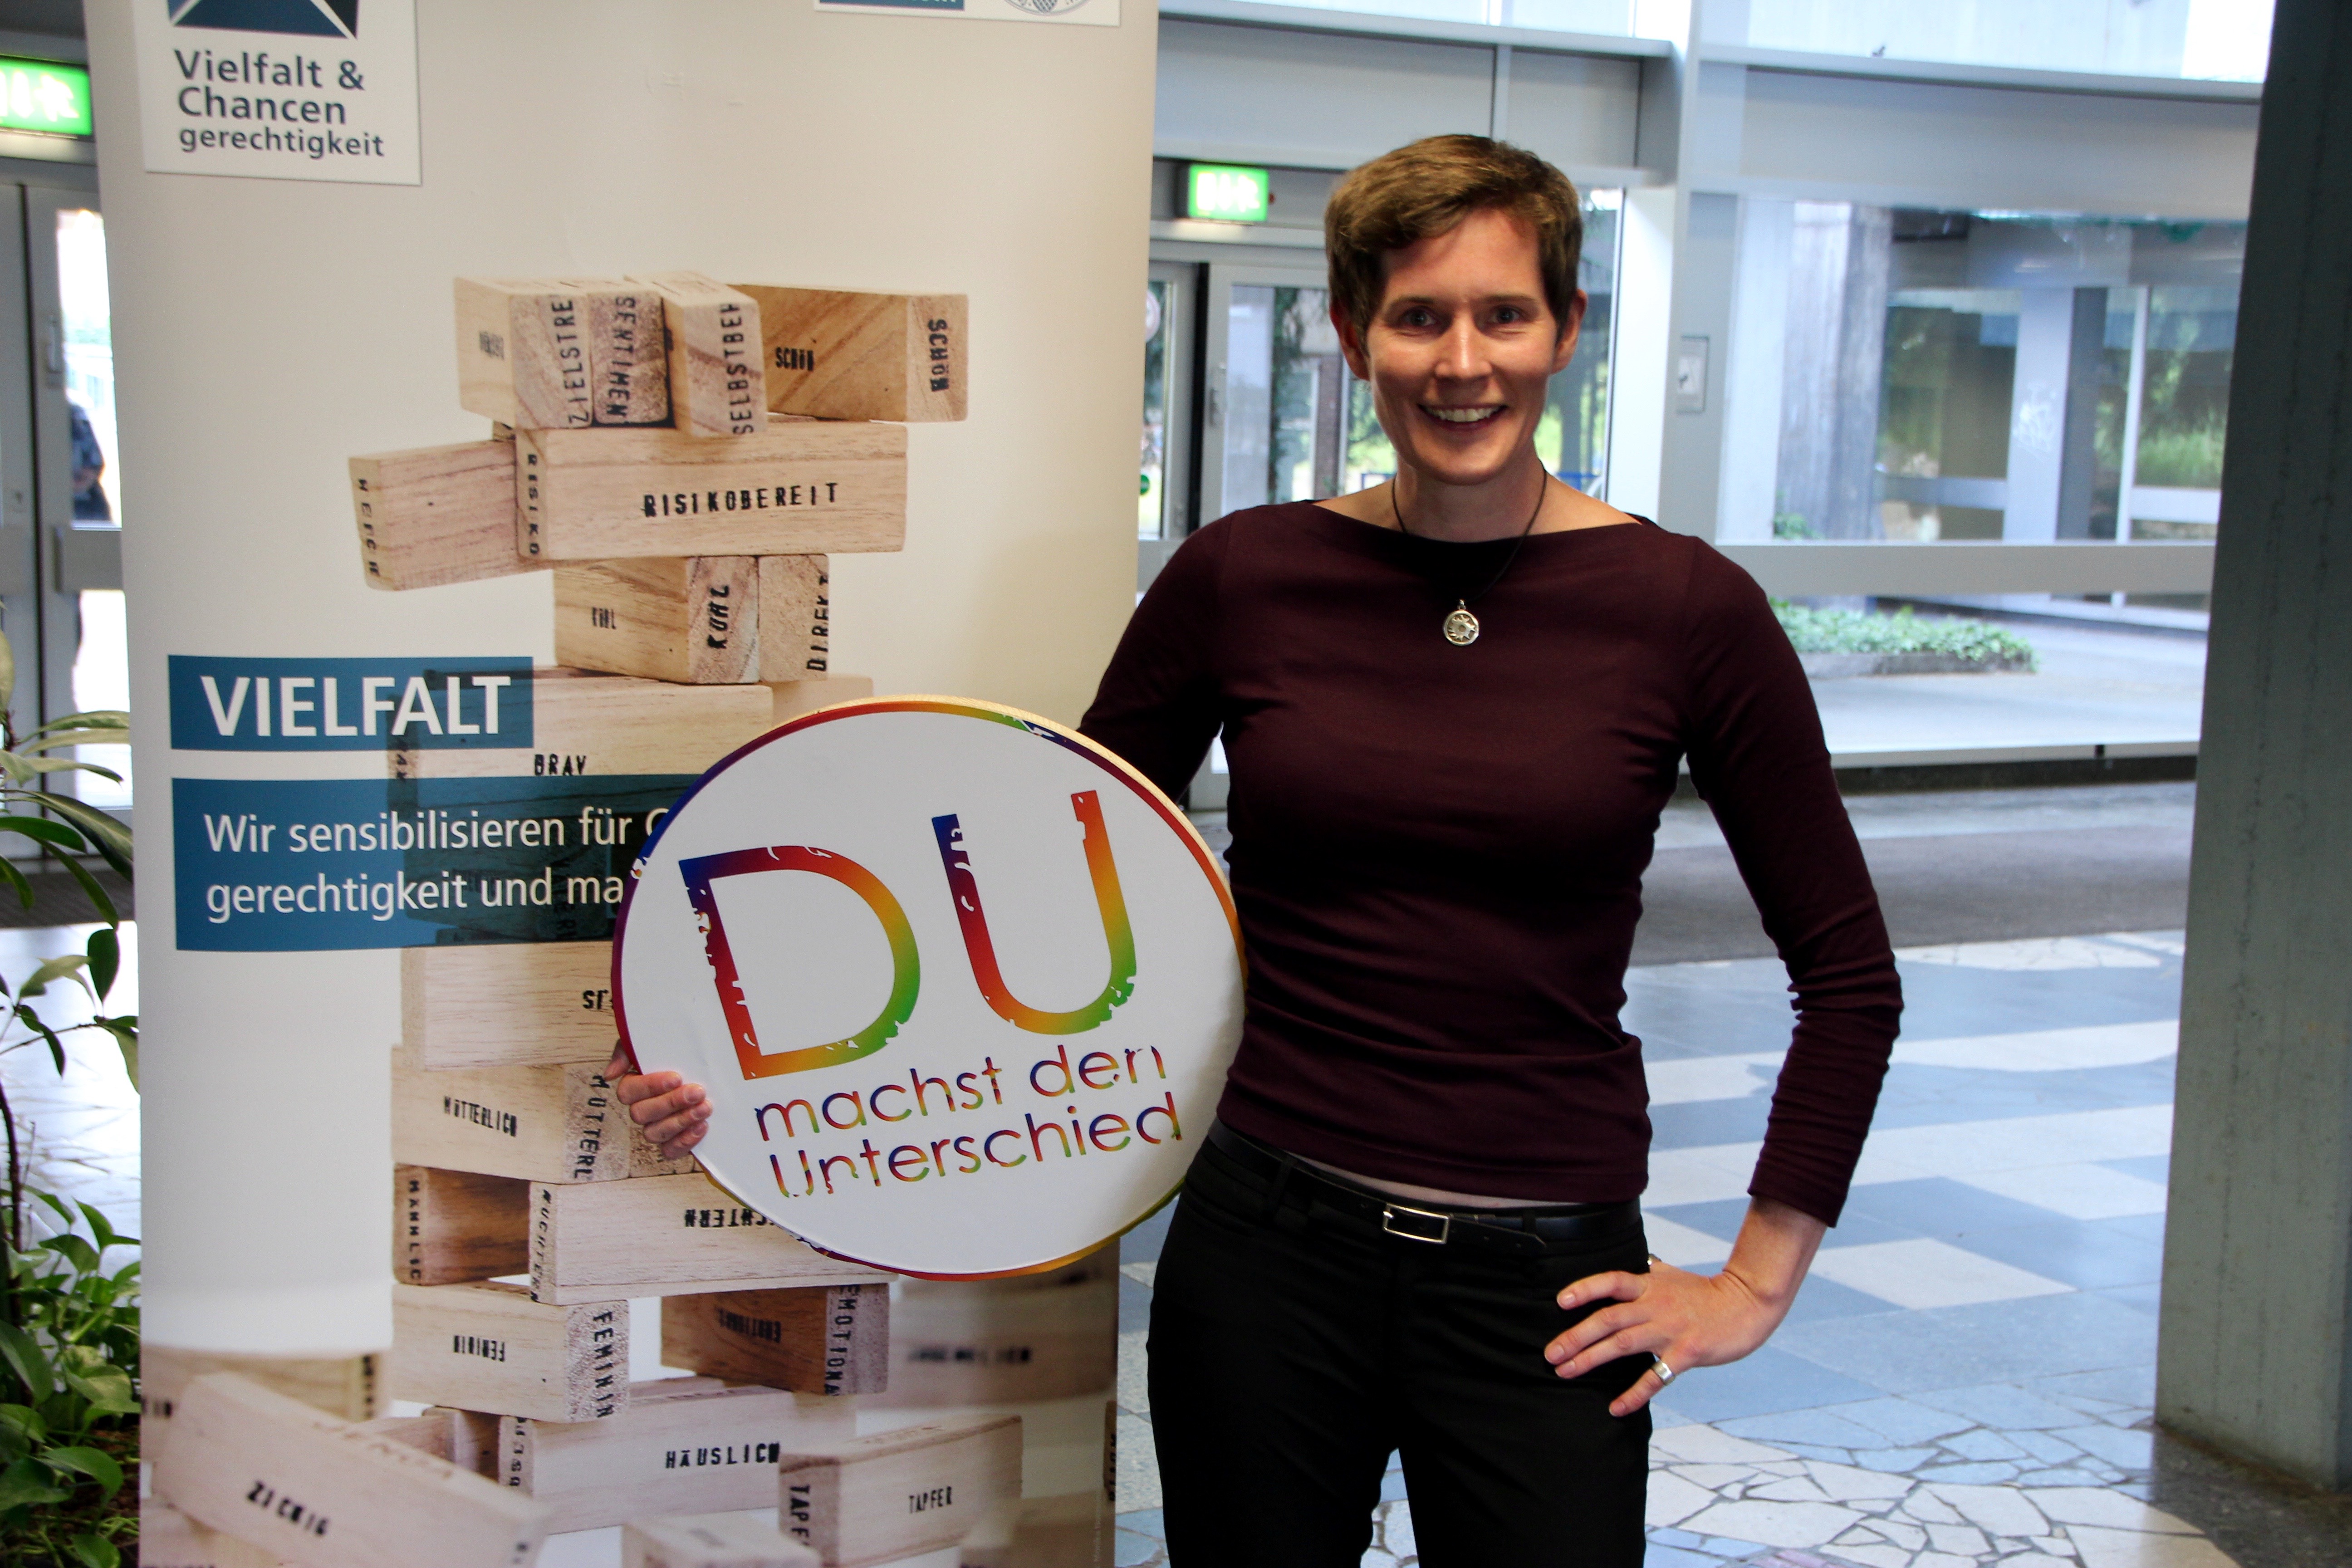 Die Gleichstellungsbeauftrage Annelene Gäckle mit dem Logo der Themenwoche "Du machst den Unterschied" in den Armen.